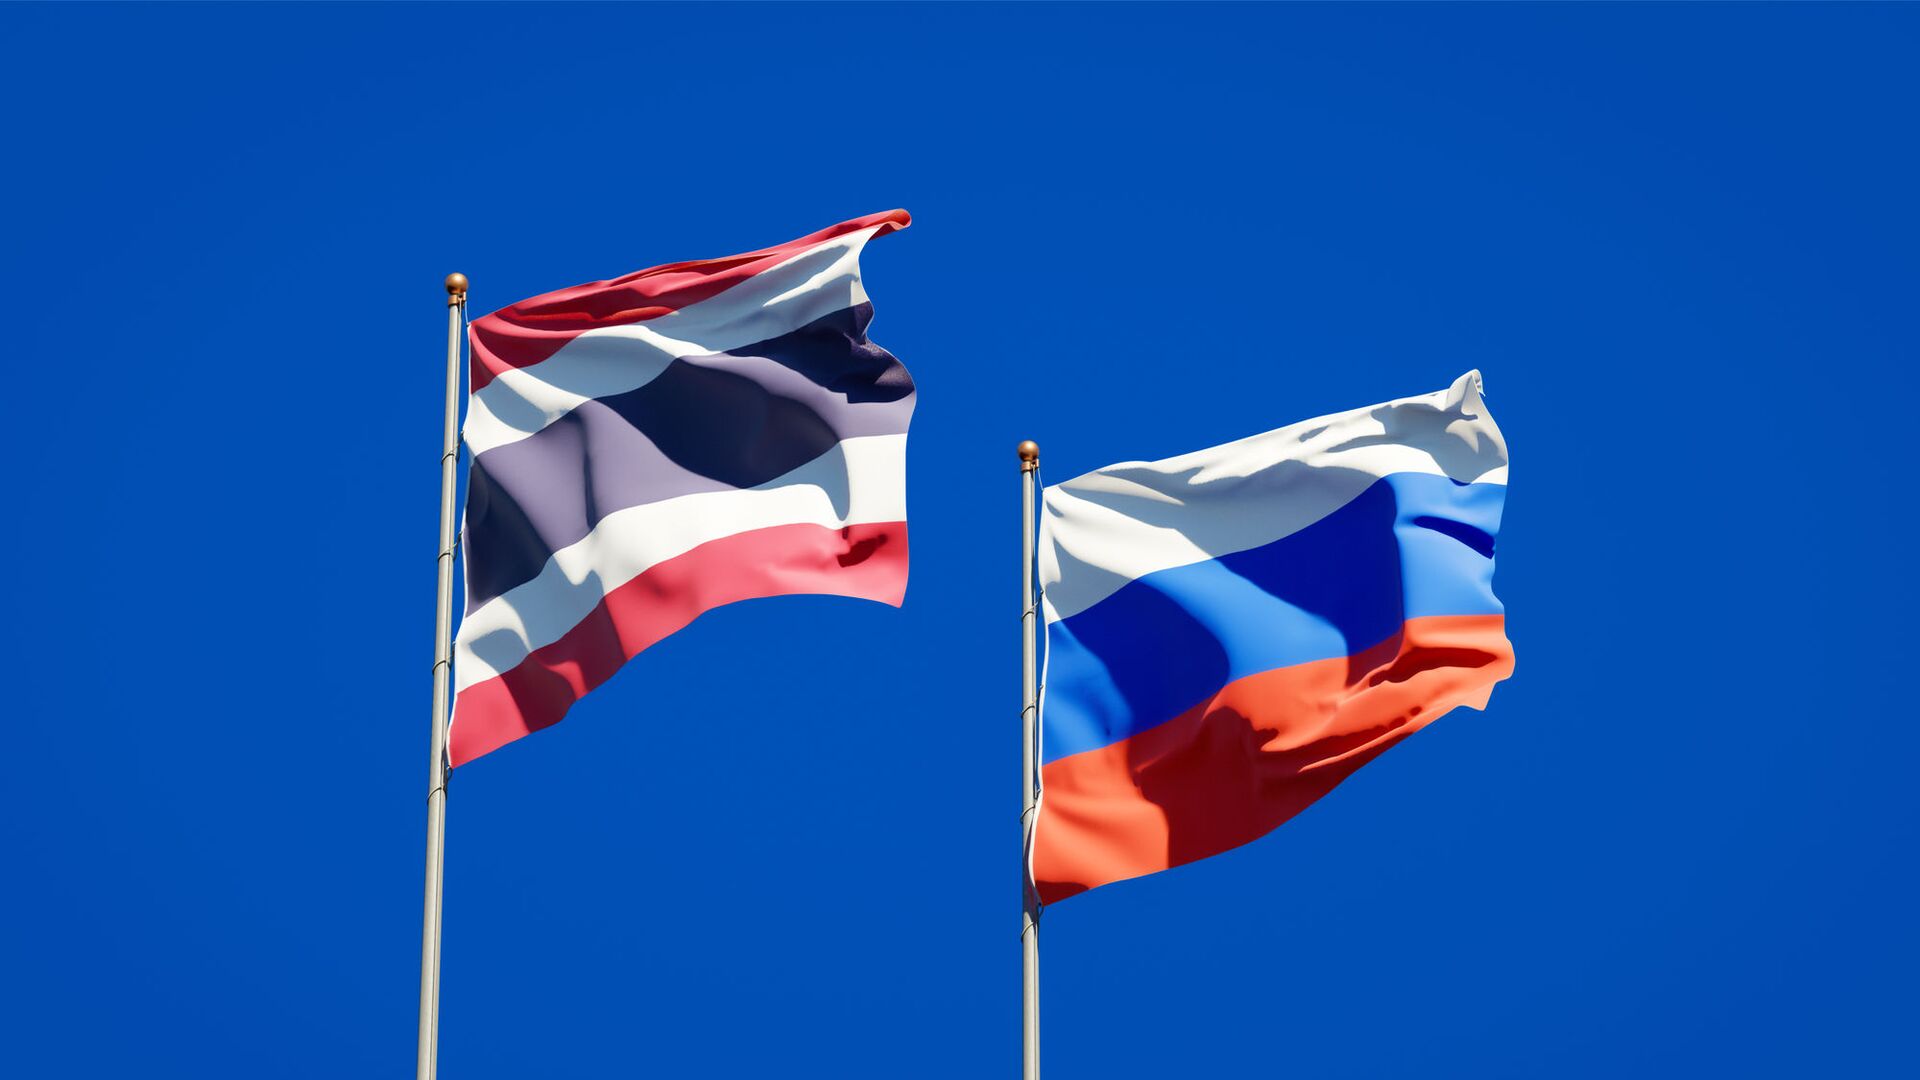 Quốc kỳ Slovenia trong quan hệ Nga - Thái và hợp tác văn hóa: Quốc kỳ Slovenia không chỉ là biểu tượng đơn thuần của quốc gia, mà còn là một nét đẹp văn hóa đa dạng trong quan hệ Quốc tế. Hiện nay, những nỗ lực hợp tác văn hóa giữa Slovenia với Nga và Thái Lan cũng đang diễn ra tích cực, góp phần thúc đẩy văn hóa và du lịch của ba nước.